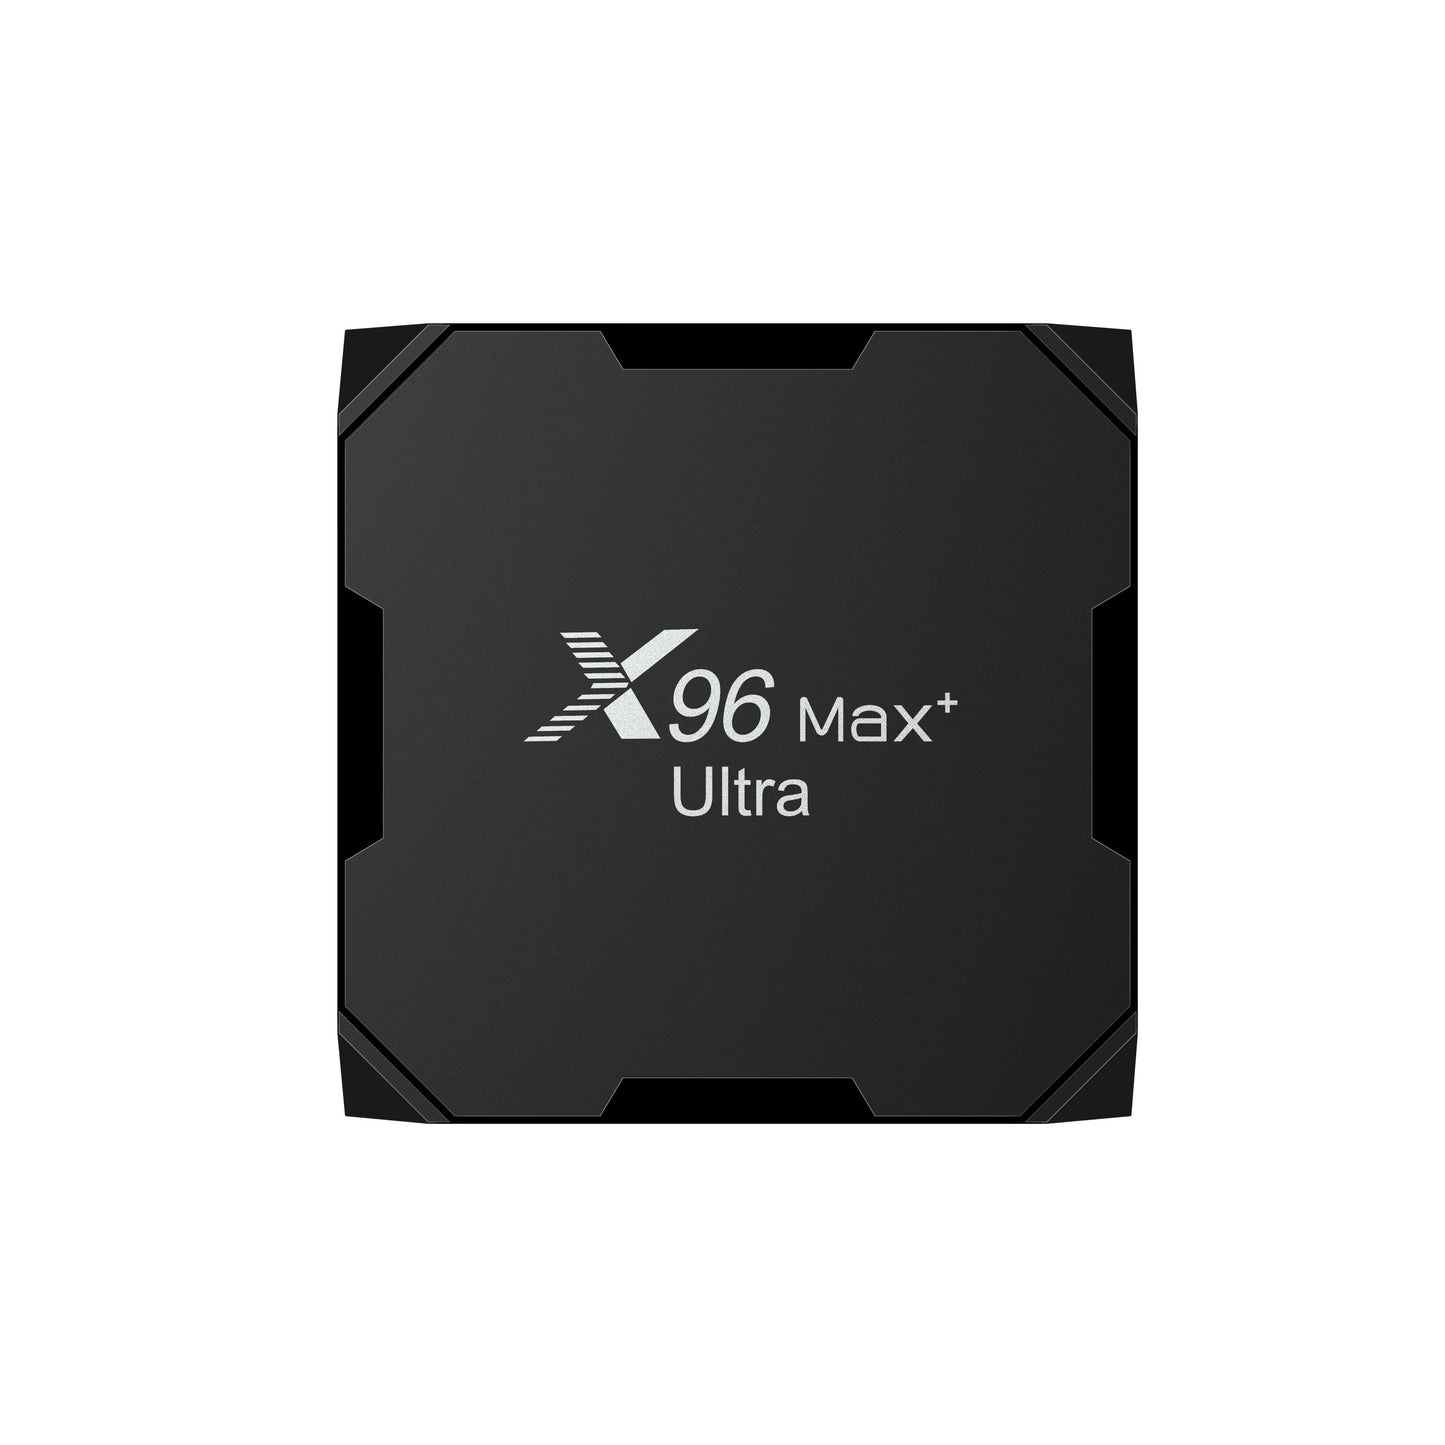 Android Box X96 MAX+ ULTRA 4GB RAM, 32GB ROM, S905X4 CPU (Smart TV Konsole)